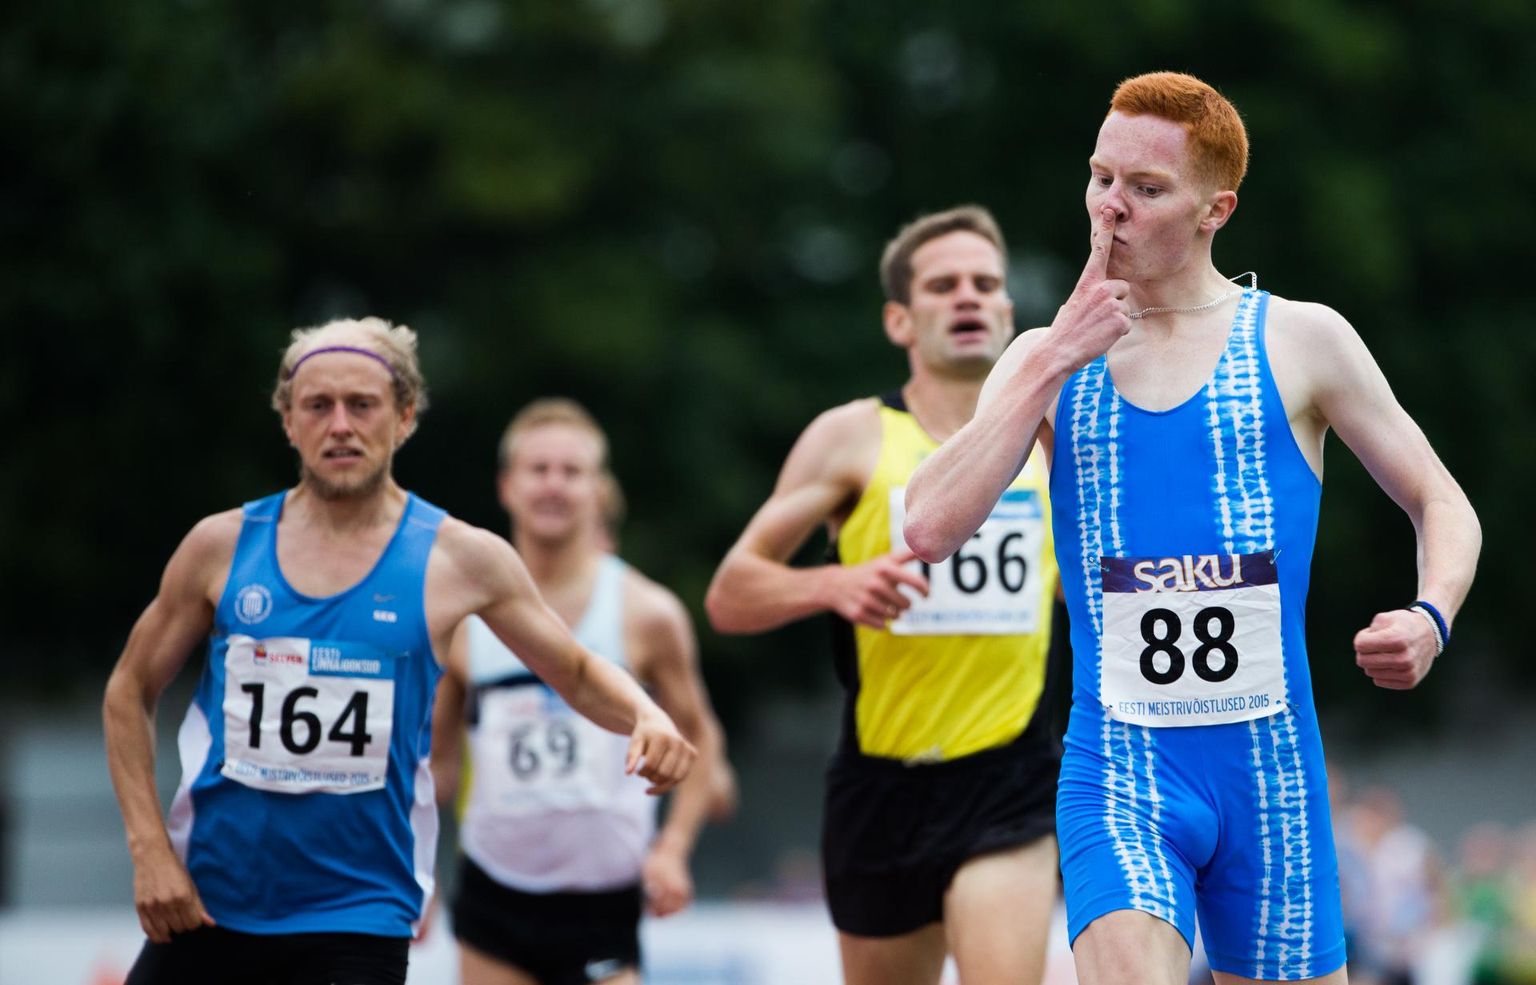 Andi Noot võidab neli suve tagasi Kadrioru staadionil Eesti meistrivõistlustel 1500 meetri jooksu, osutades sõrmega oma nõrgale kohale – ninale. Teiseks tuli Allar Lamp (nr 164) ja kolmandaks Tiidrek Nurme (nr 166).